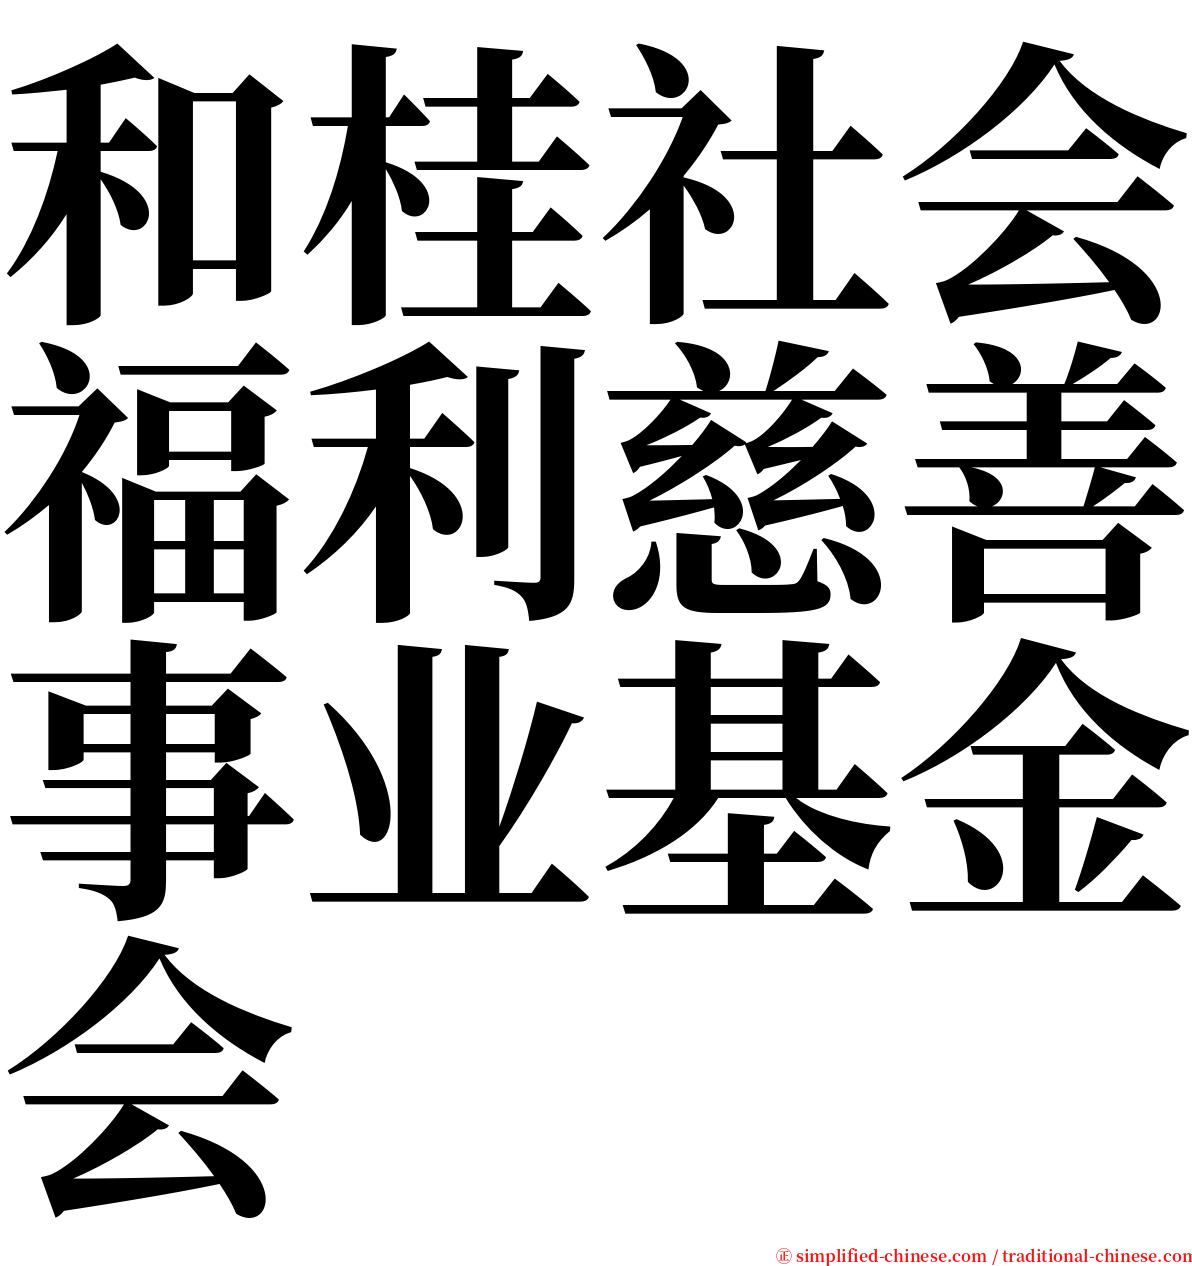 和桂社会福利慈善事业基金会 serif font